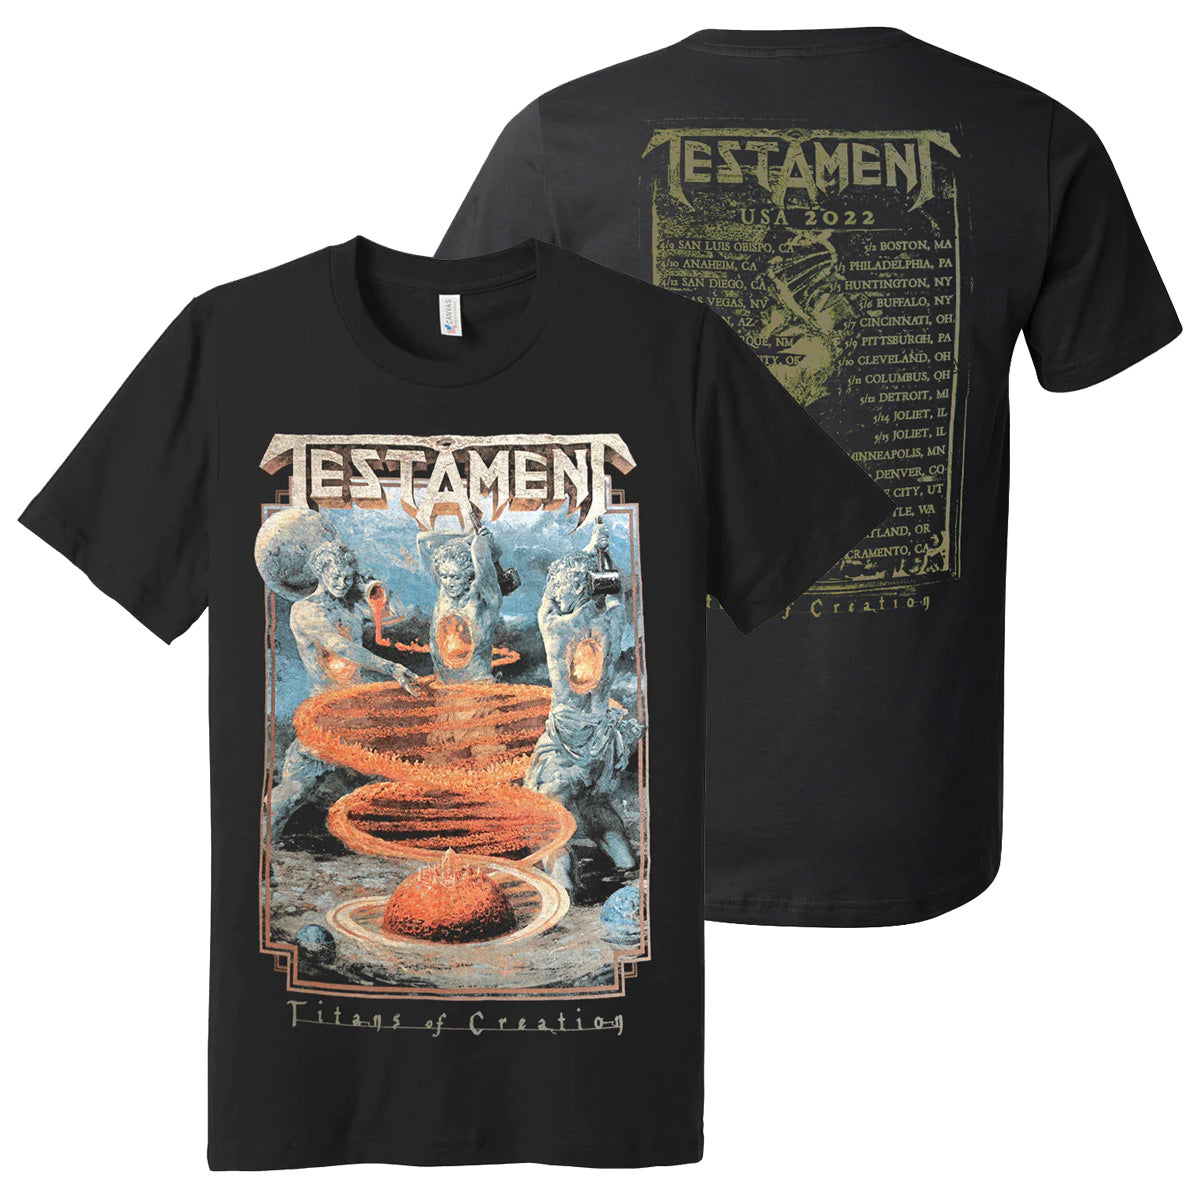 Titans of Creation Tour T-Shirt